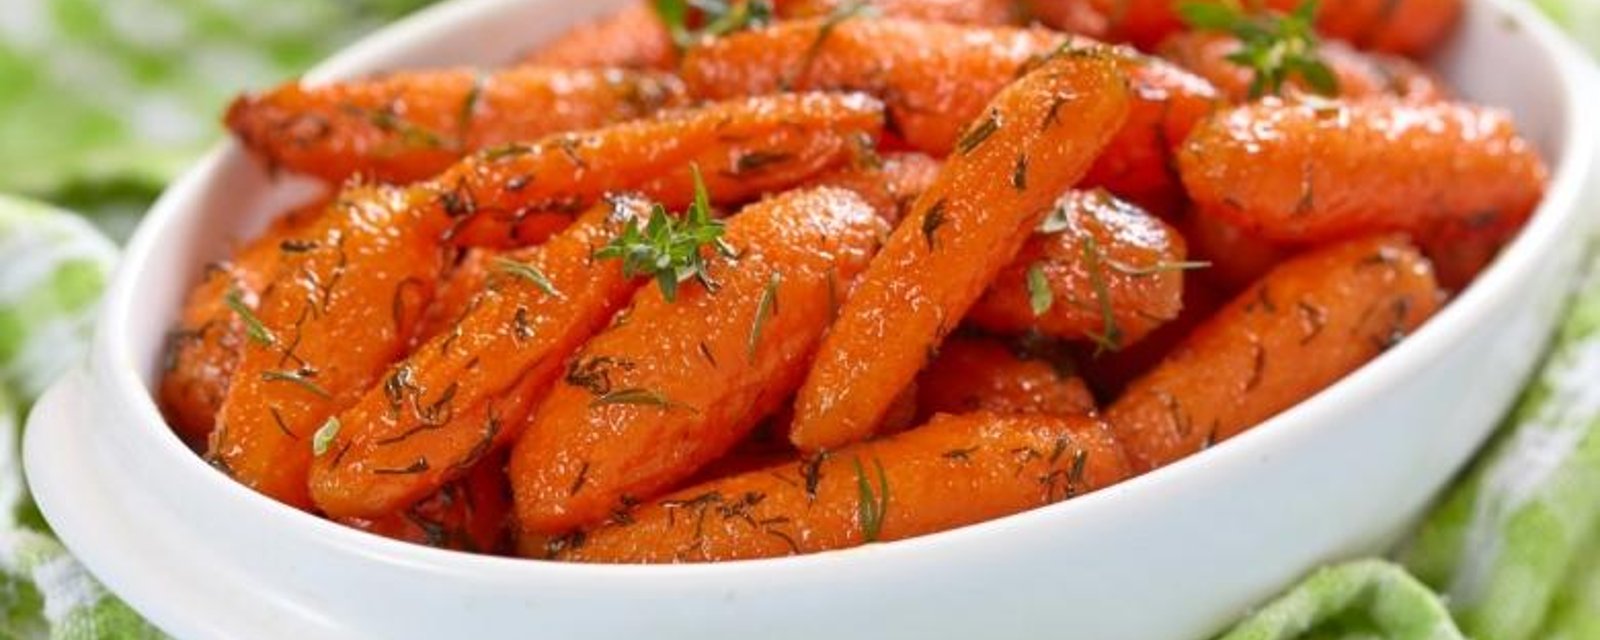 Les carottes Ranch...grillées à la perfection 